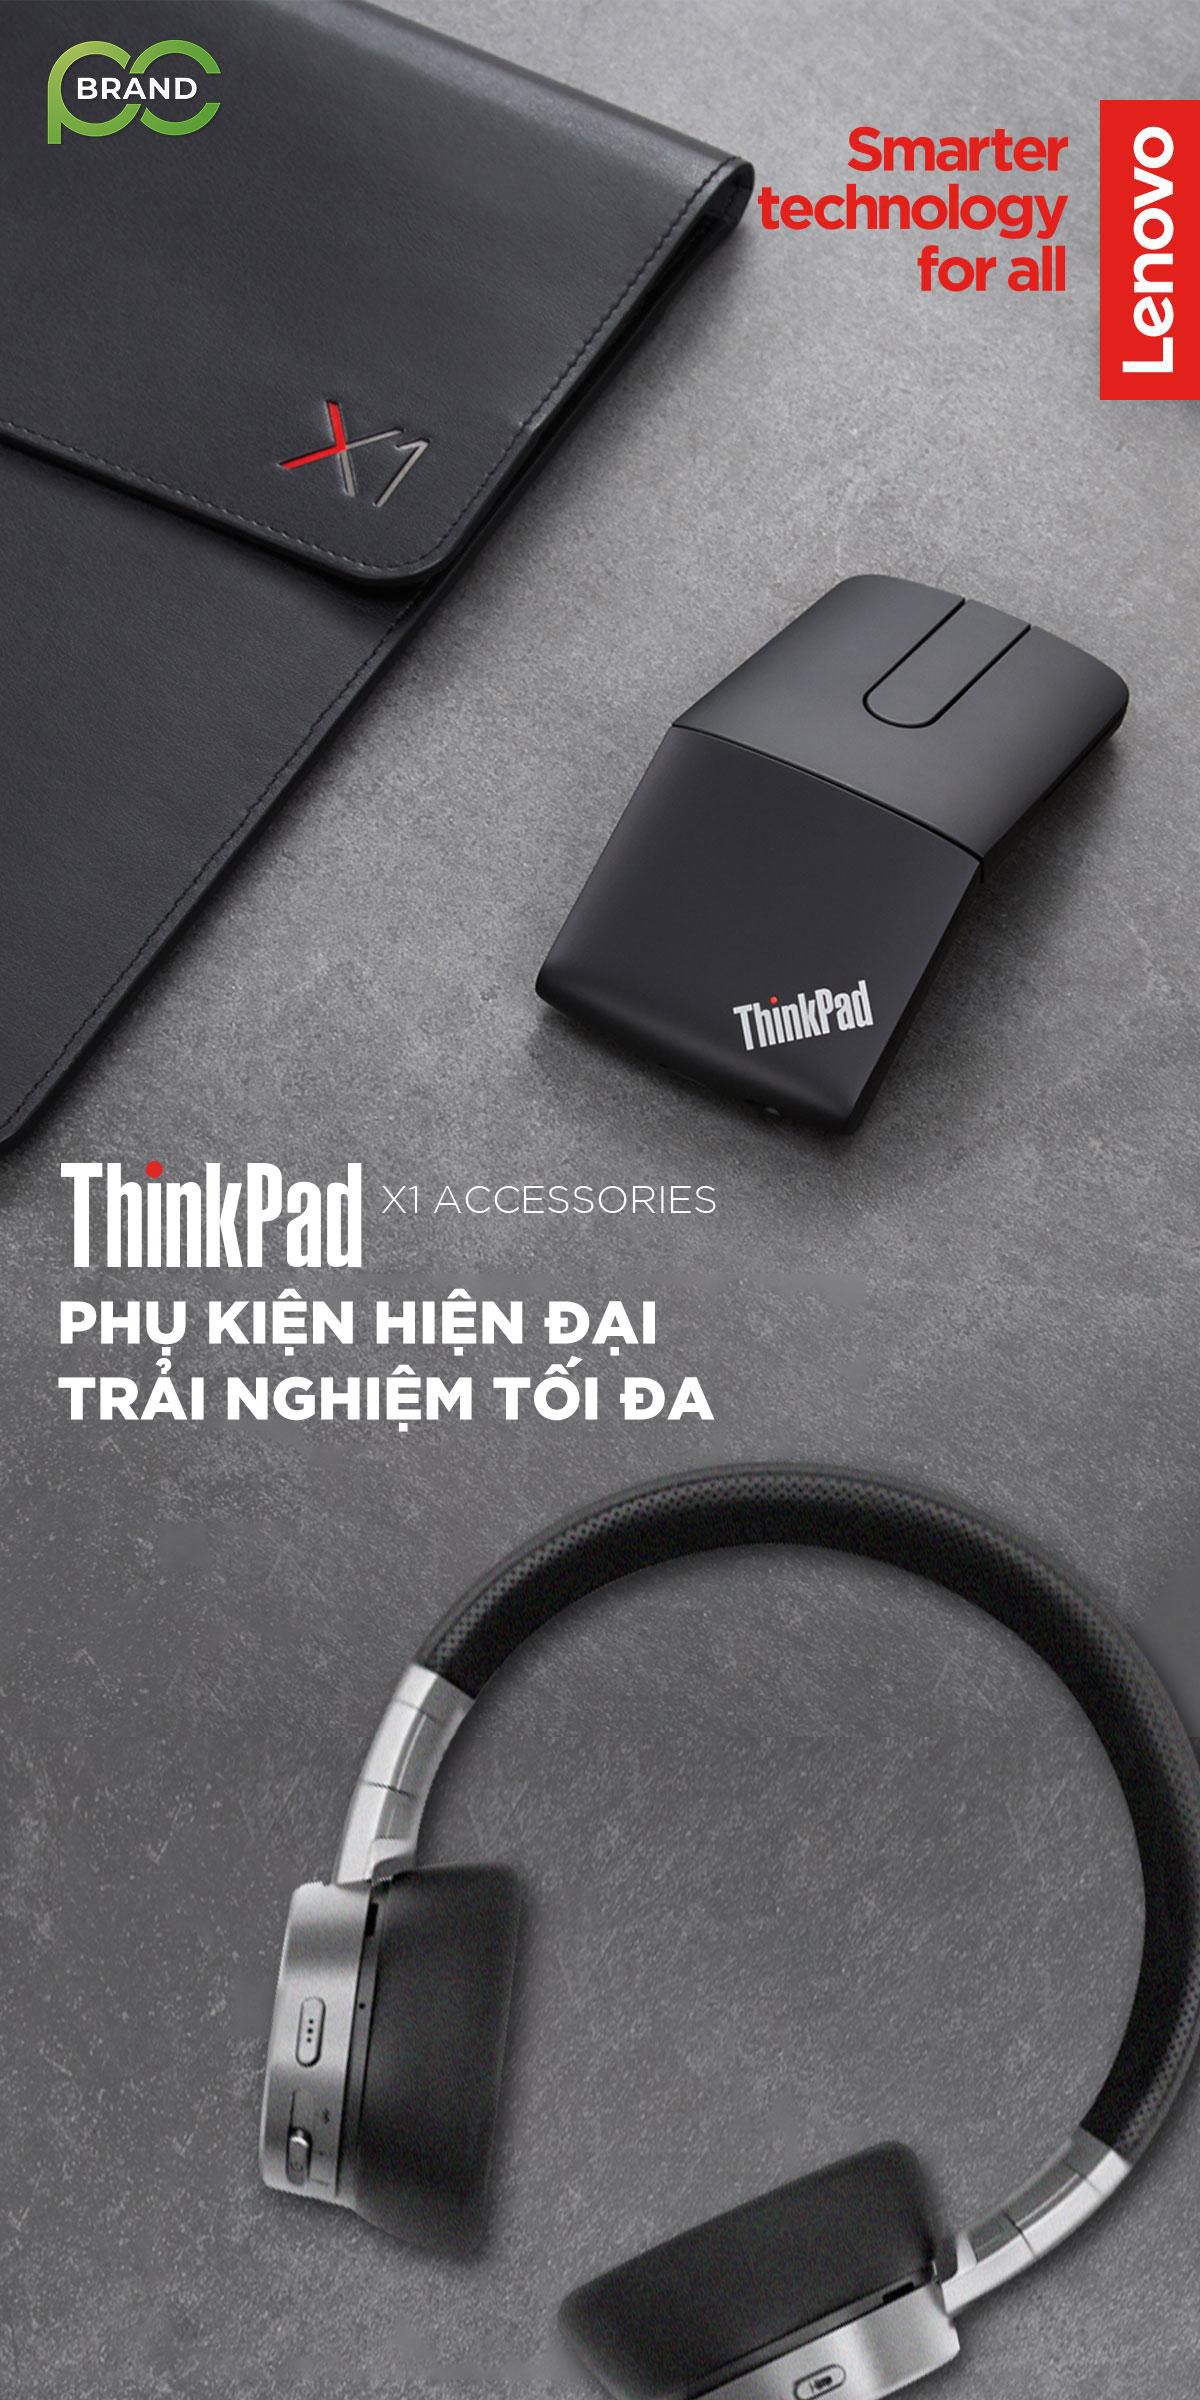 Phụ kiện hiện đại trải nghiệm tối đa với ThinkPad X1